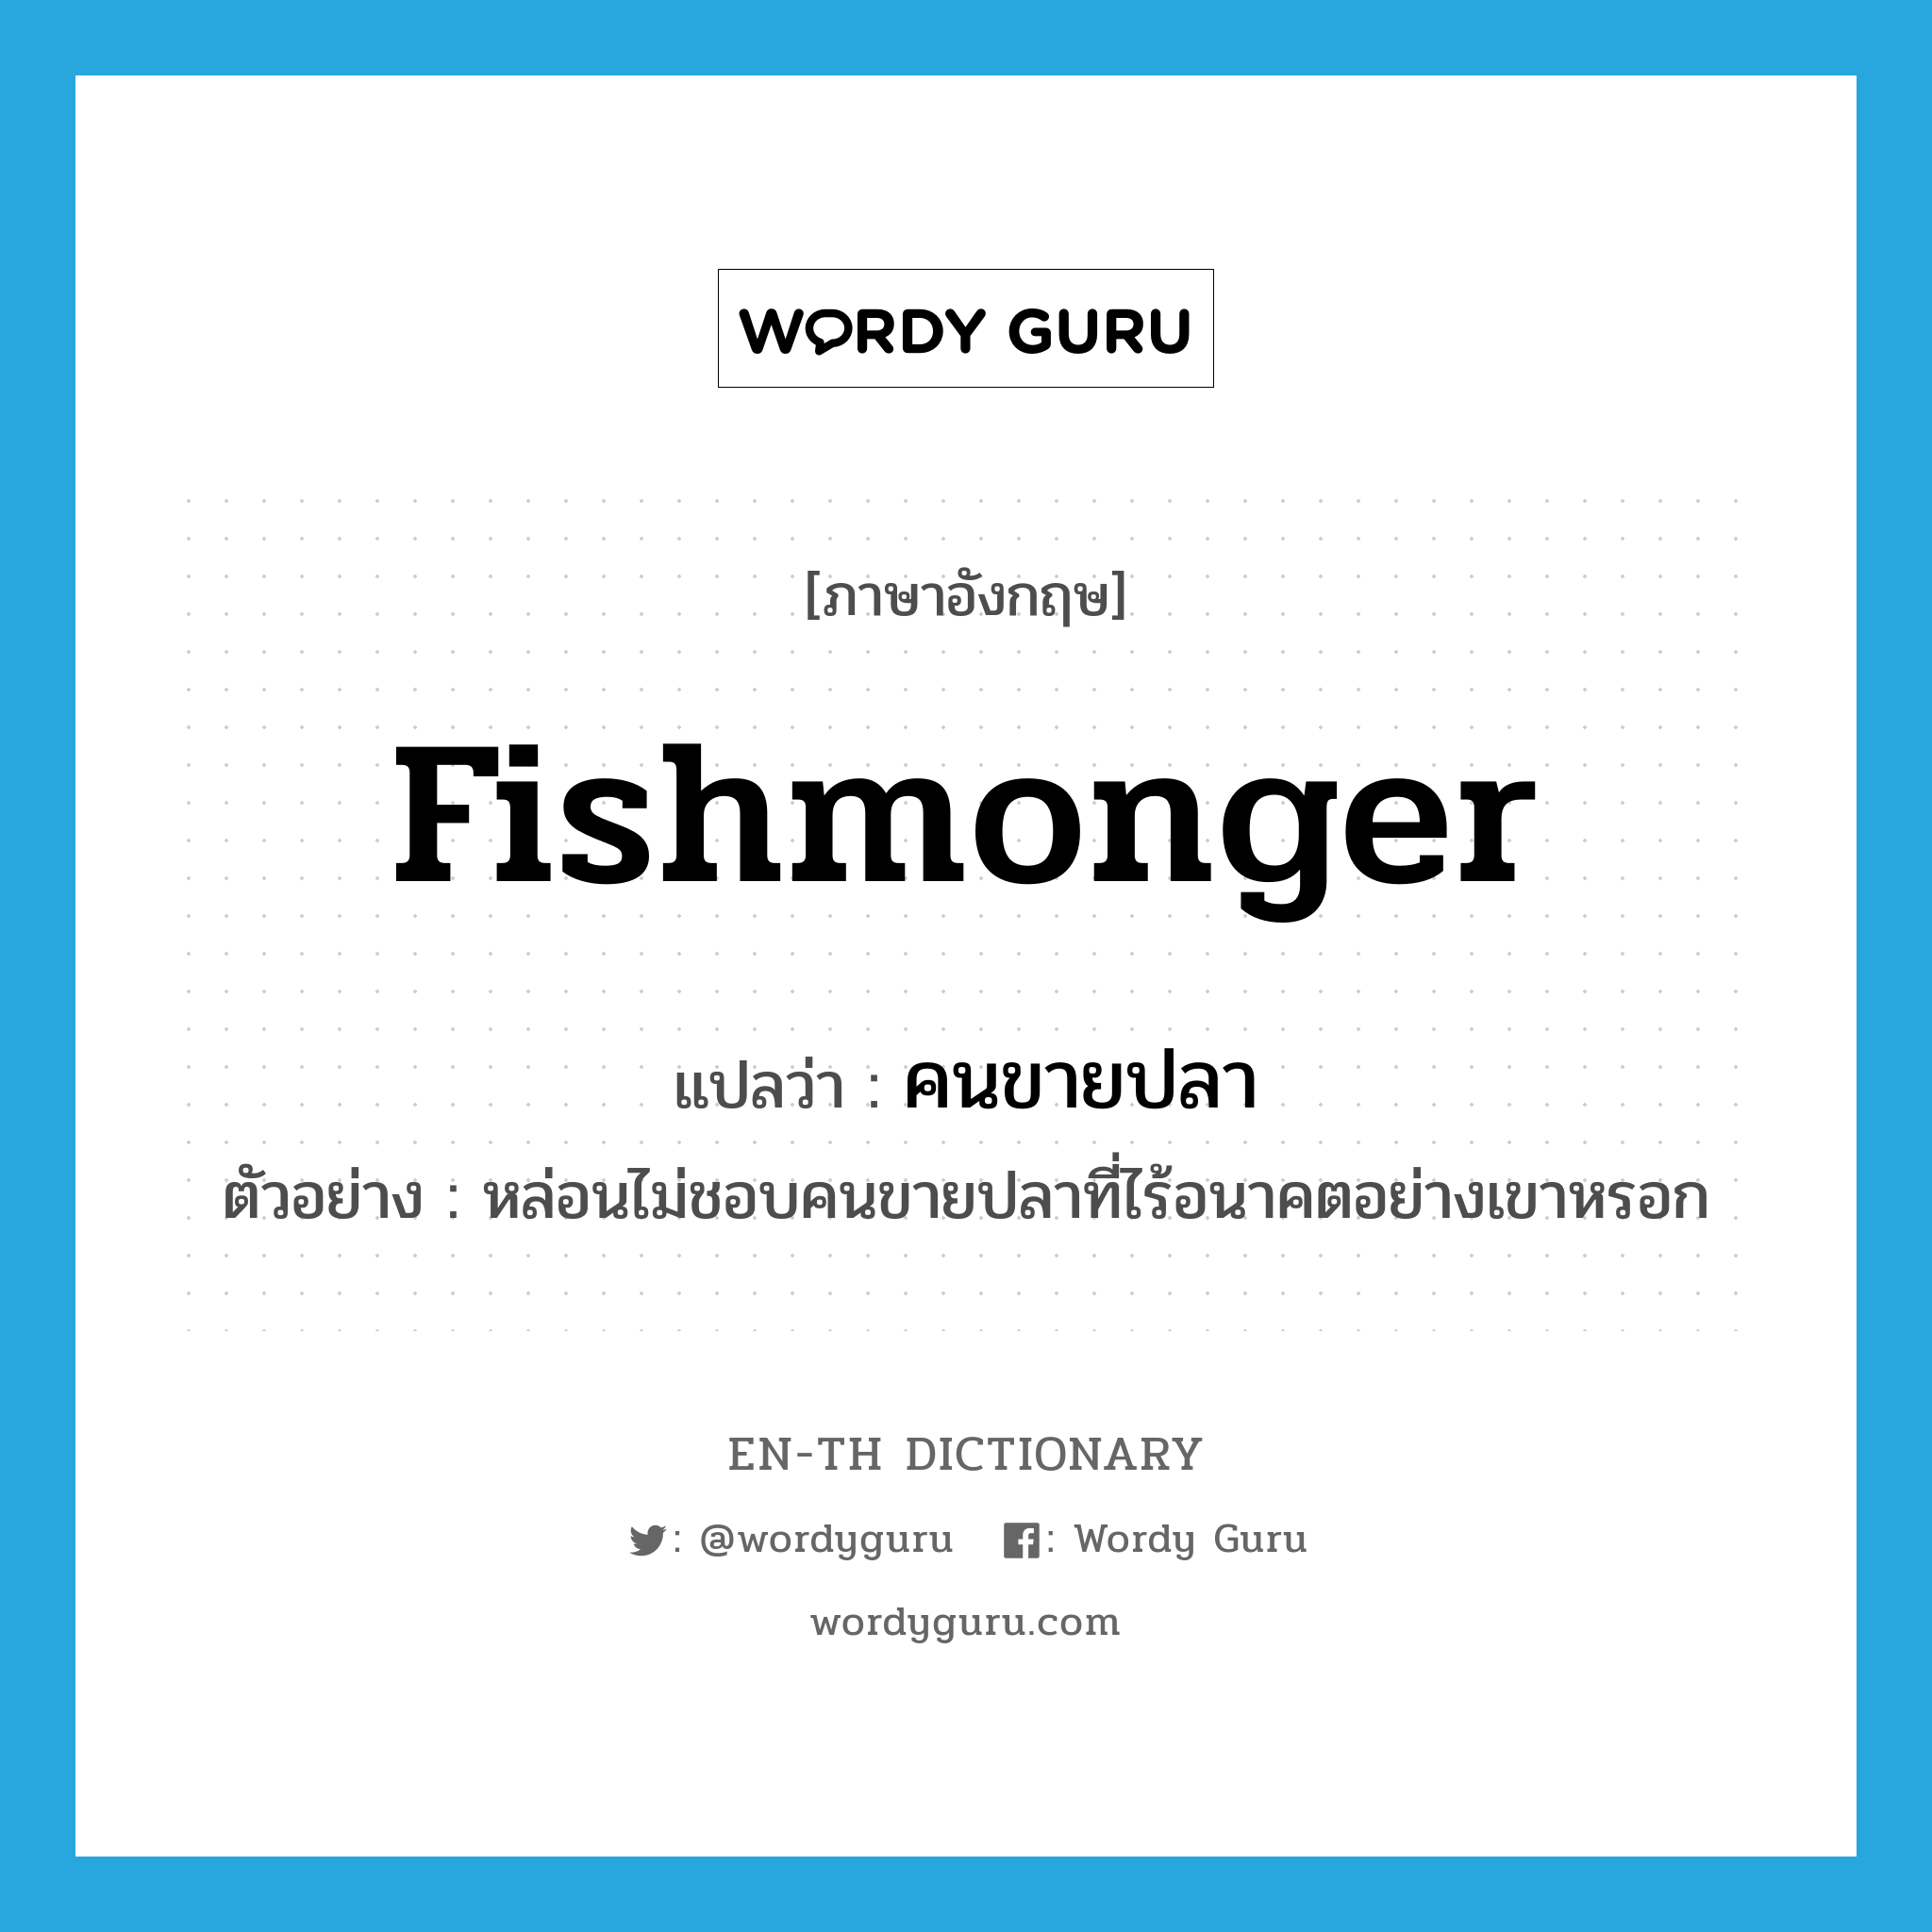 คนขายปลา ภาษาอังกฤษ?, คำศัพท์ภาษาอังกฤษ คนขายปลา แปลว่า fishmonger ประเภท N ตัวอย่าง หล่อนไม่ชอบคนขายปลาที่ไร้อนาคตอย่างเขาหรอก หมวด N